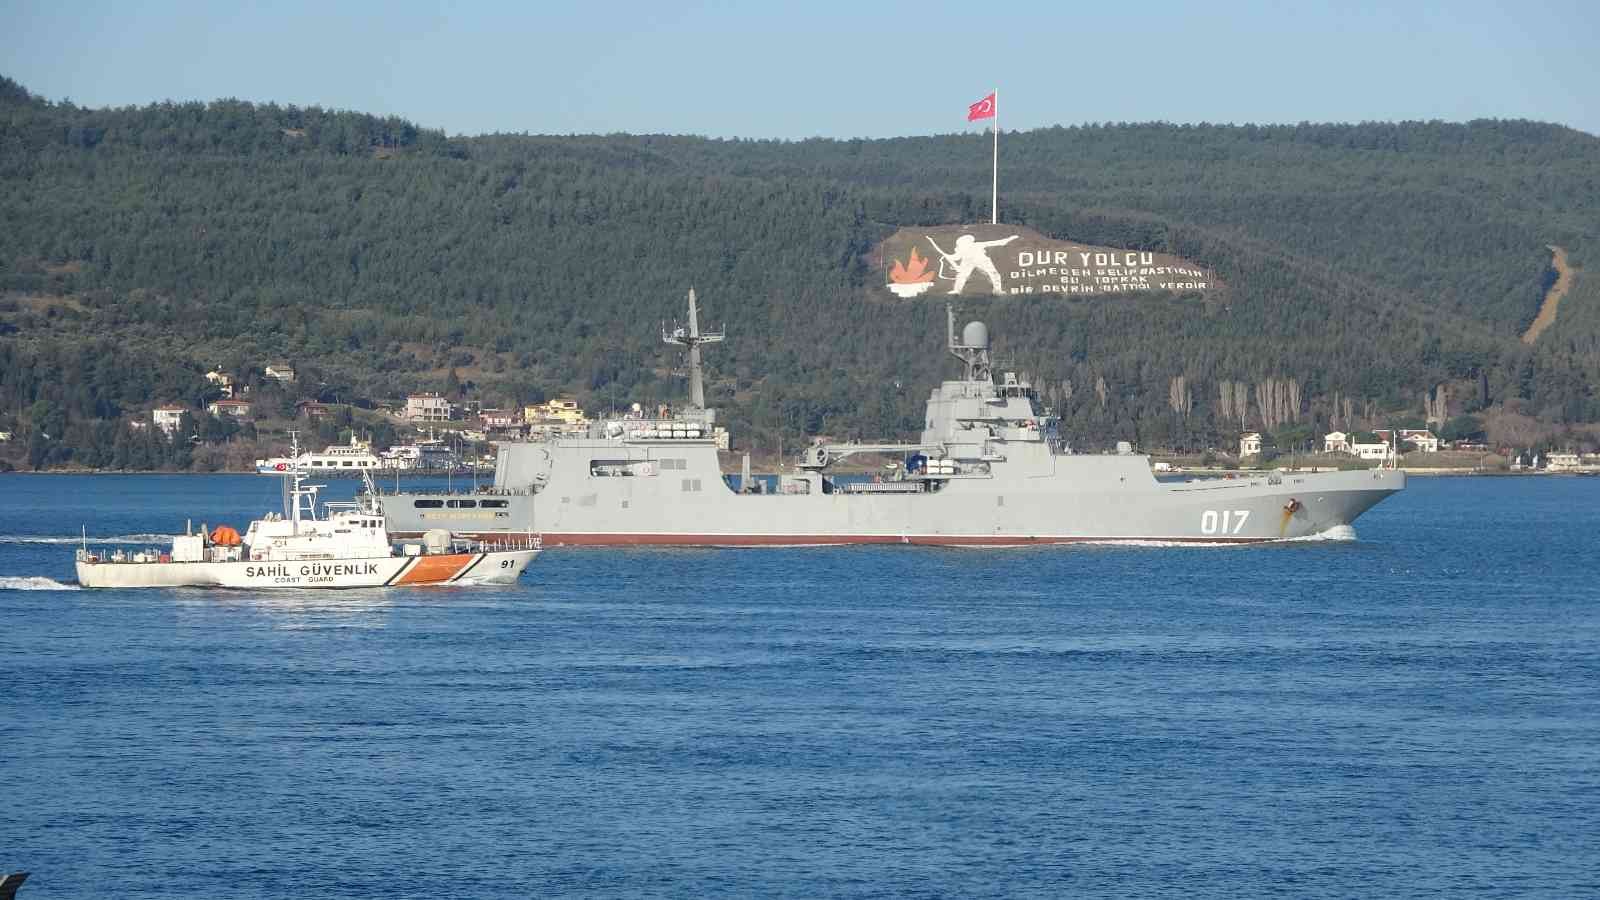 Rus savaş gemileri peş peşe Çanakkale Boğazı’ndan geçti #canakkale